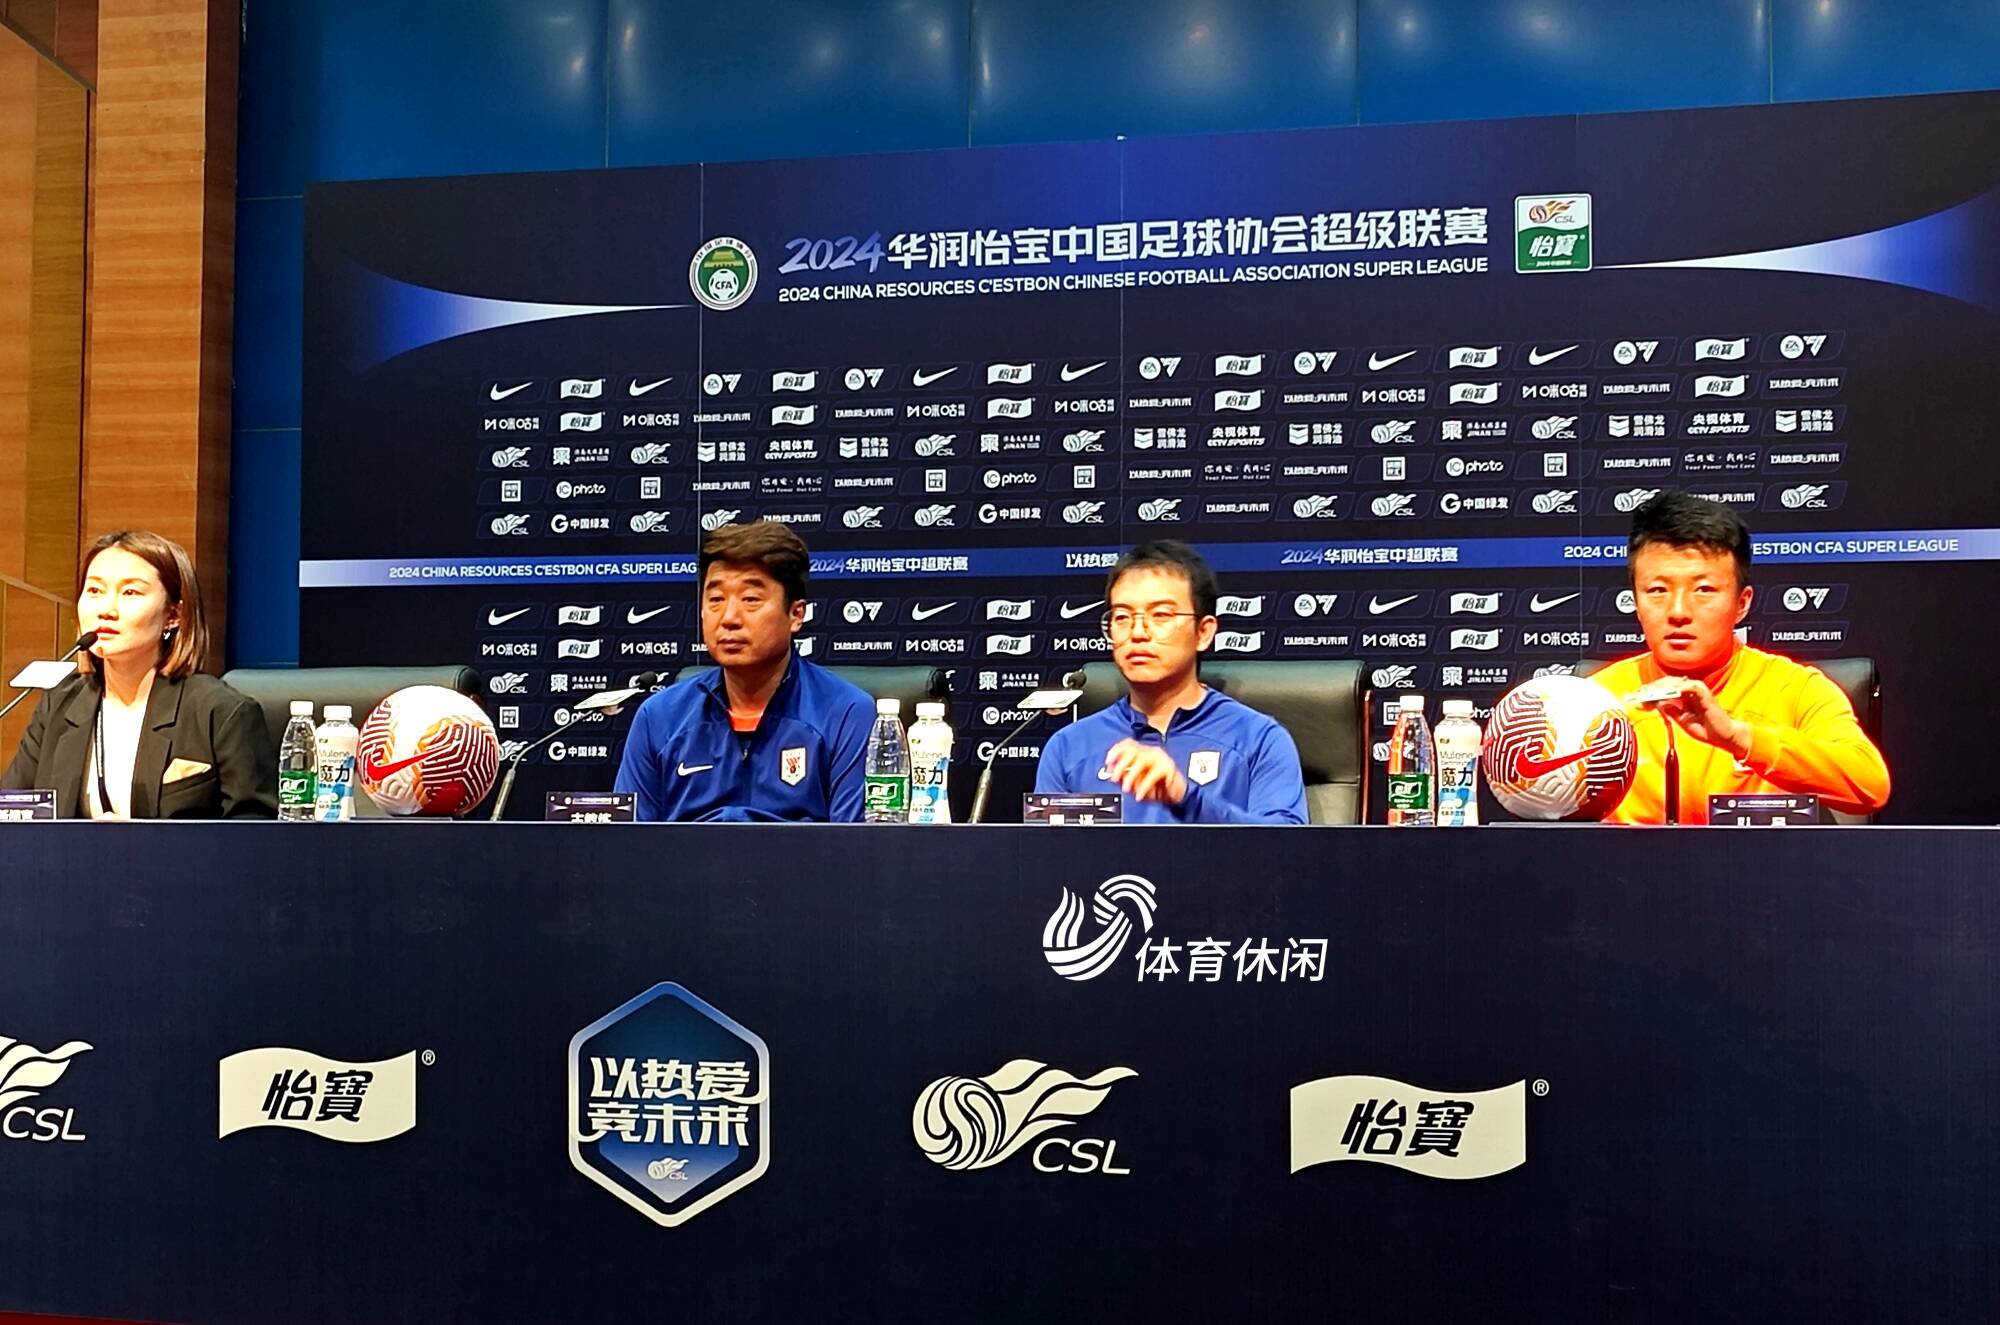  Shandong Taishan's home game in Shenzhen tomorrow Jin Xuanmin revealed Jia Desong's injury